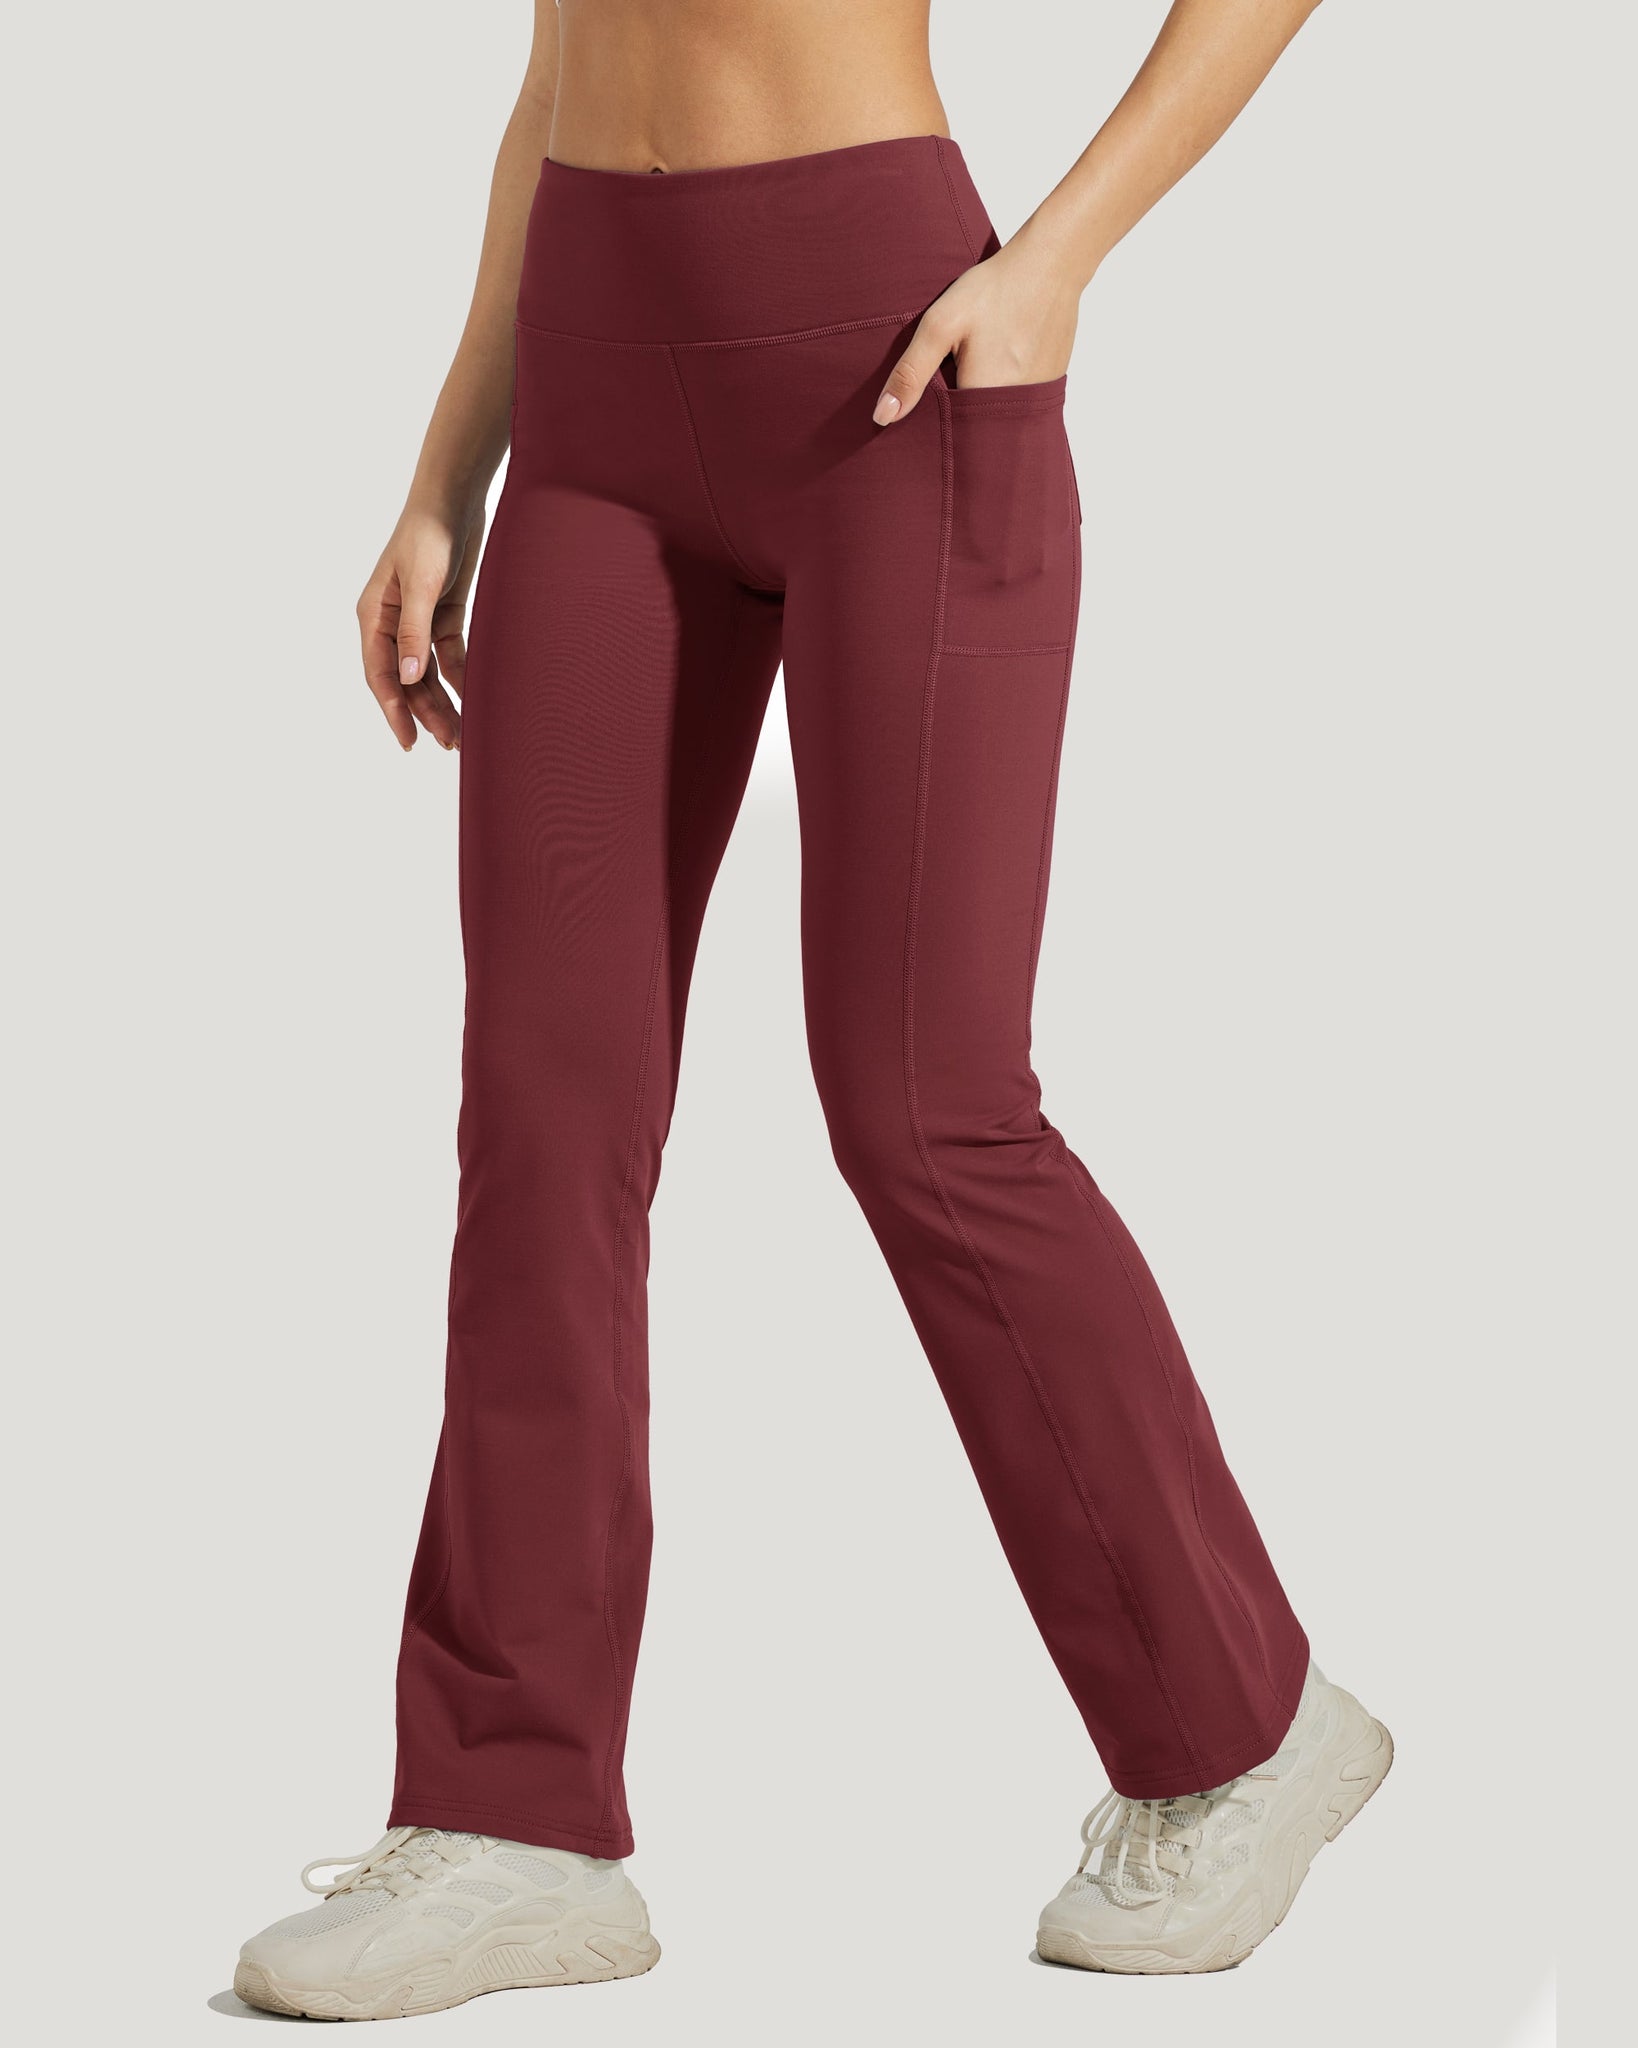 Women's Fleece Lined Bootcut Yoga Pants_WineRed_model2